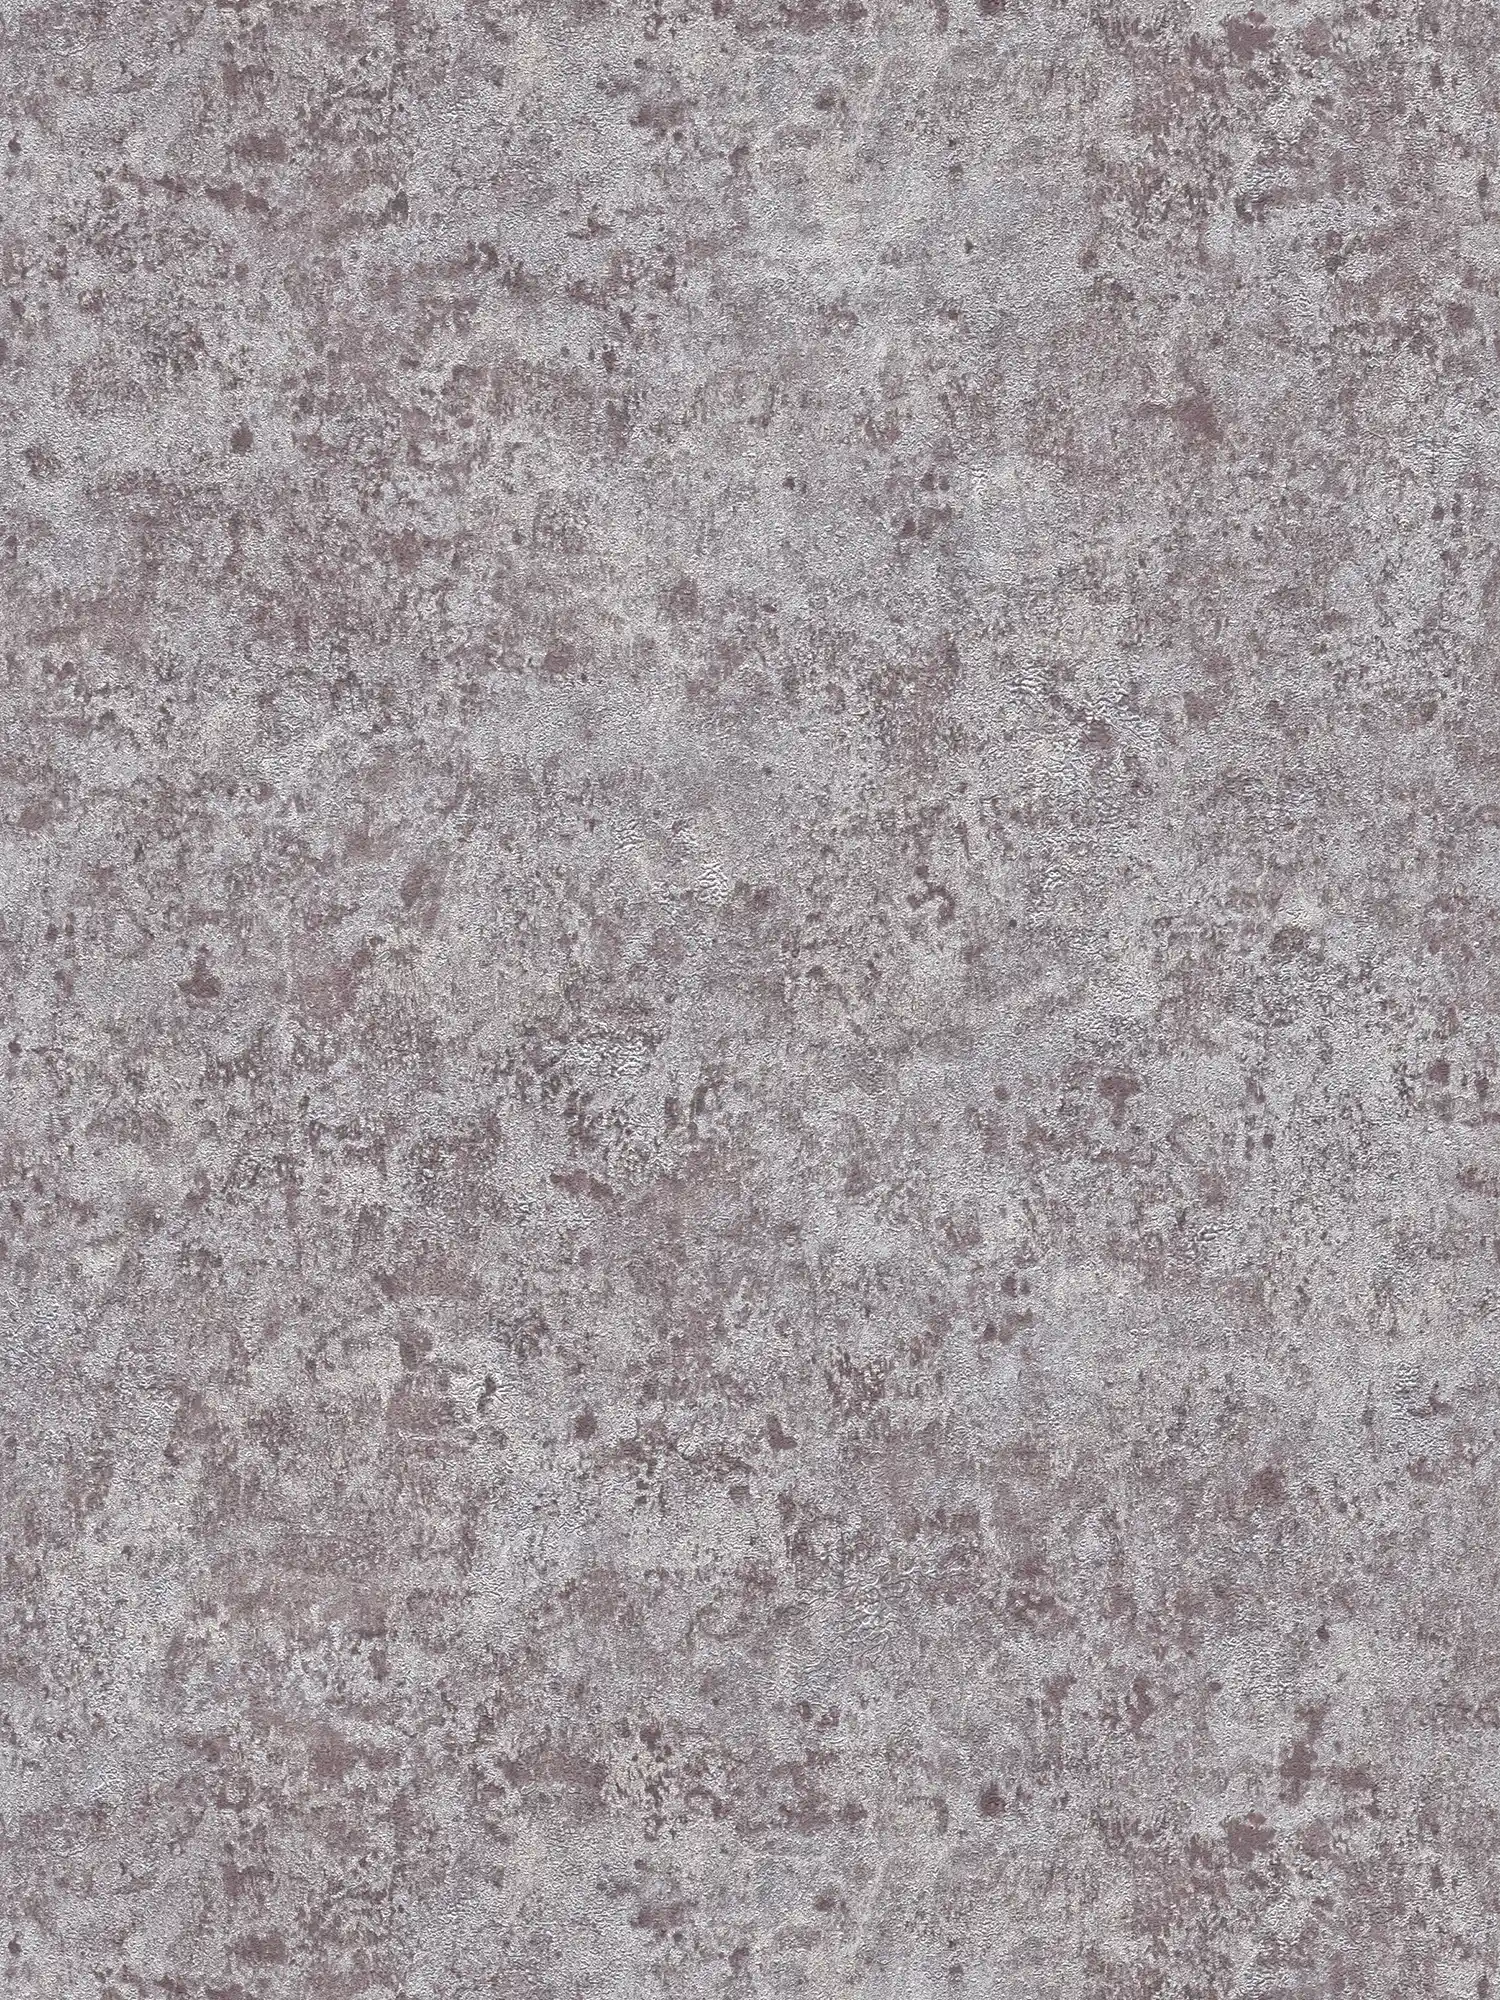 Carta da parati in tessuto non tessuto con effetto metallizzato lucido - grigio, argento, marrone
